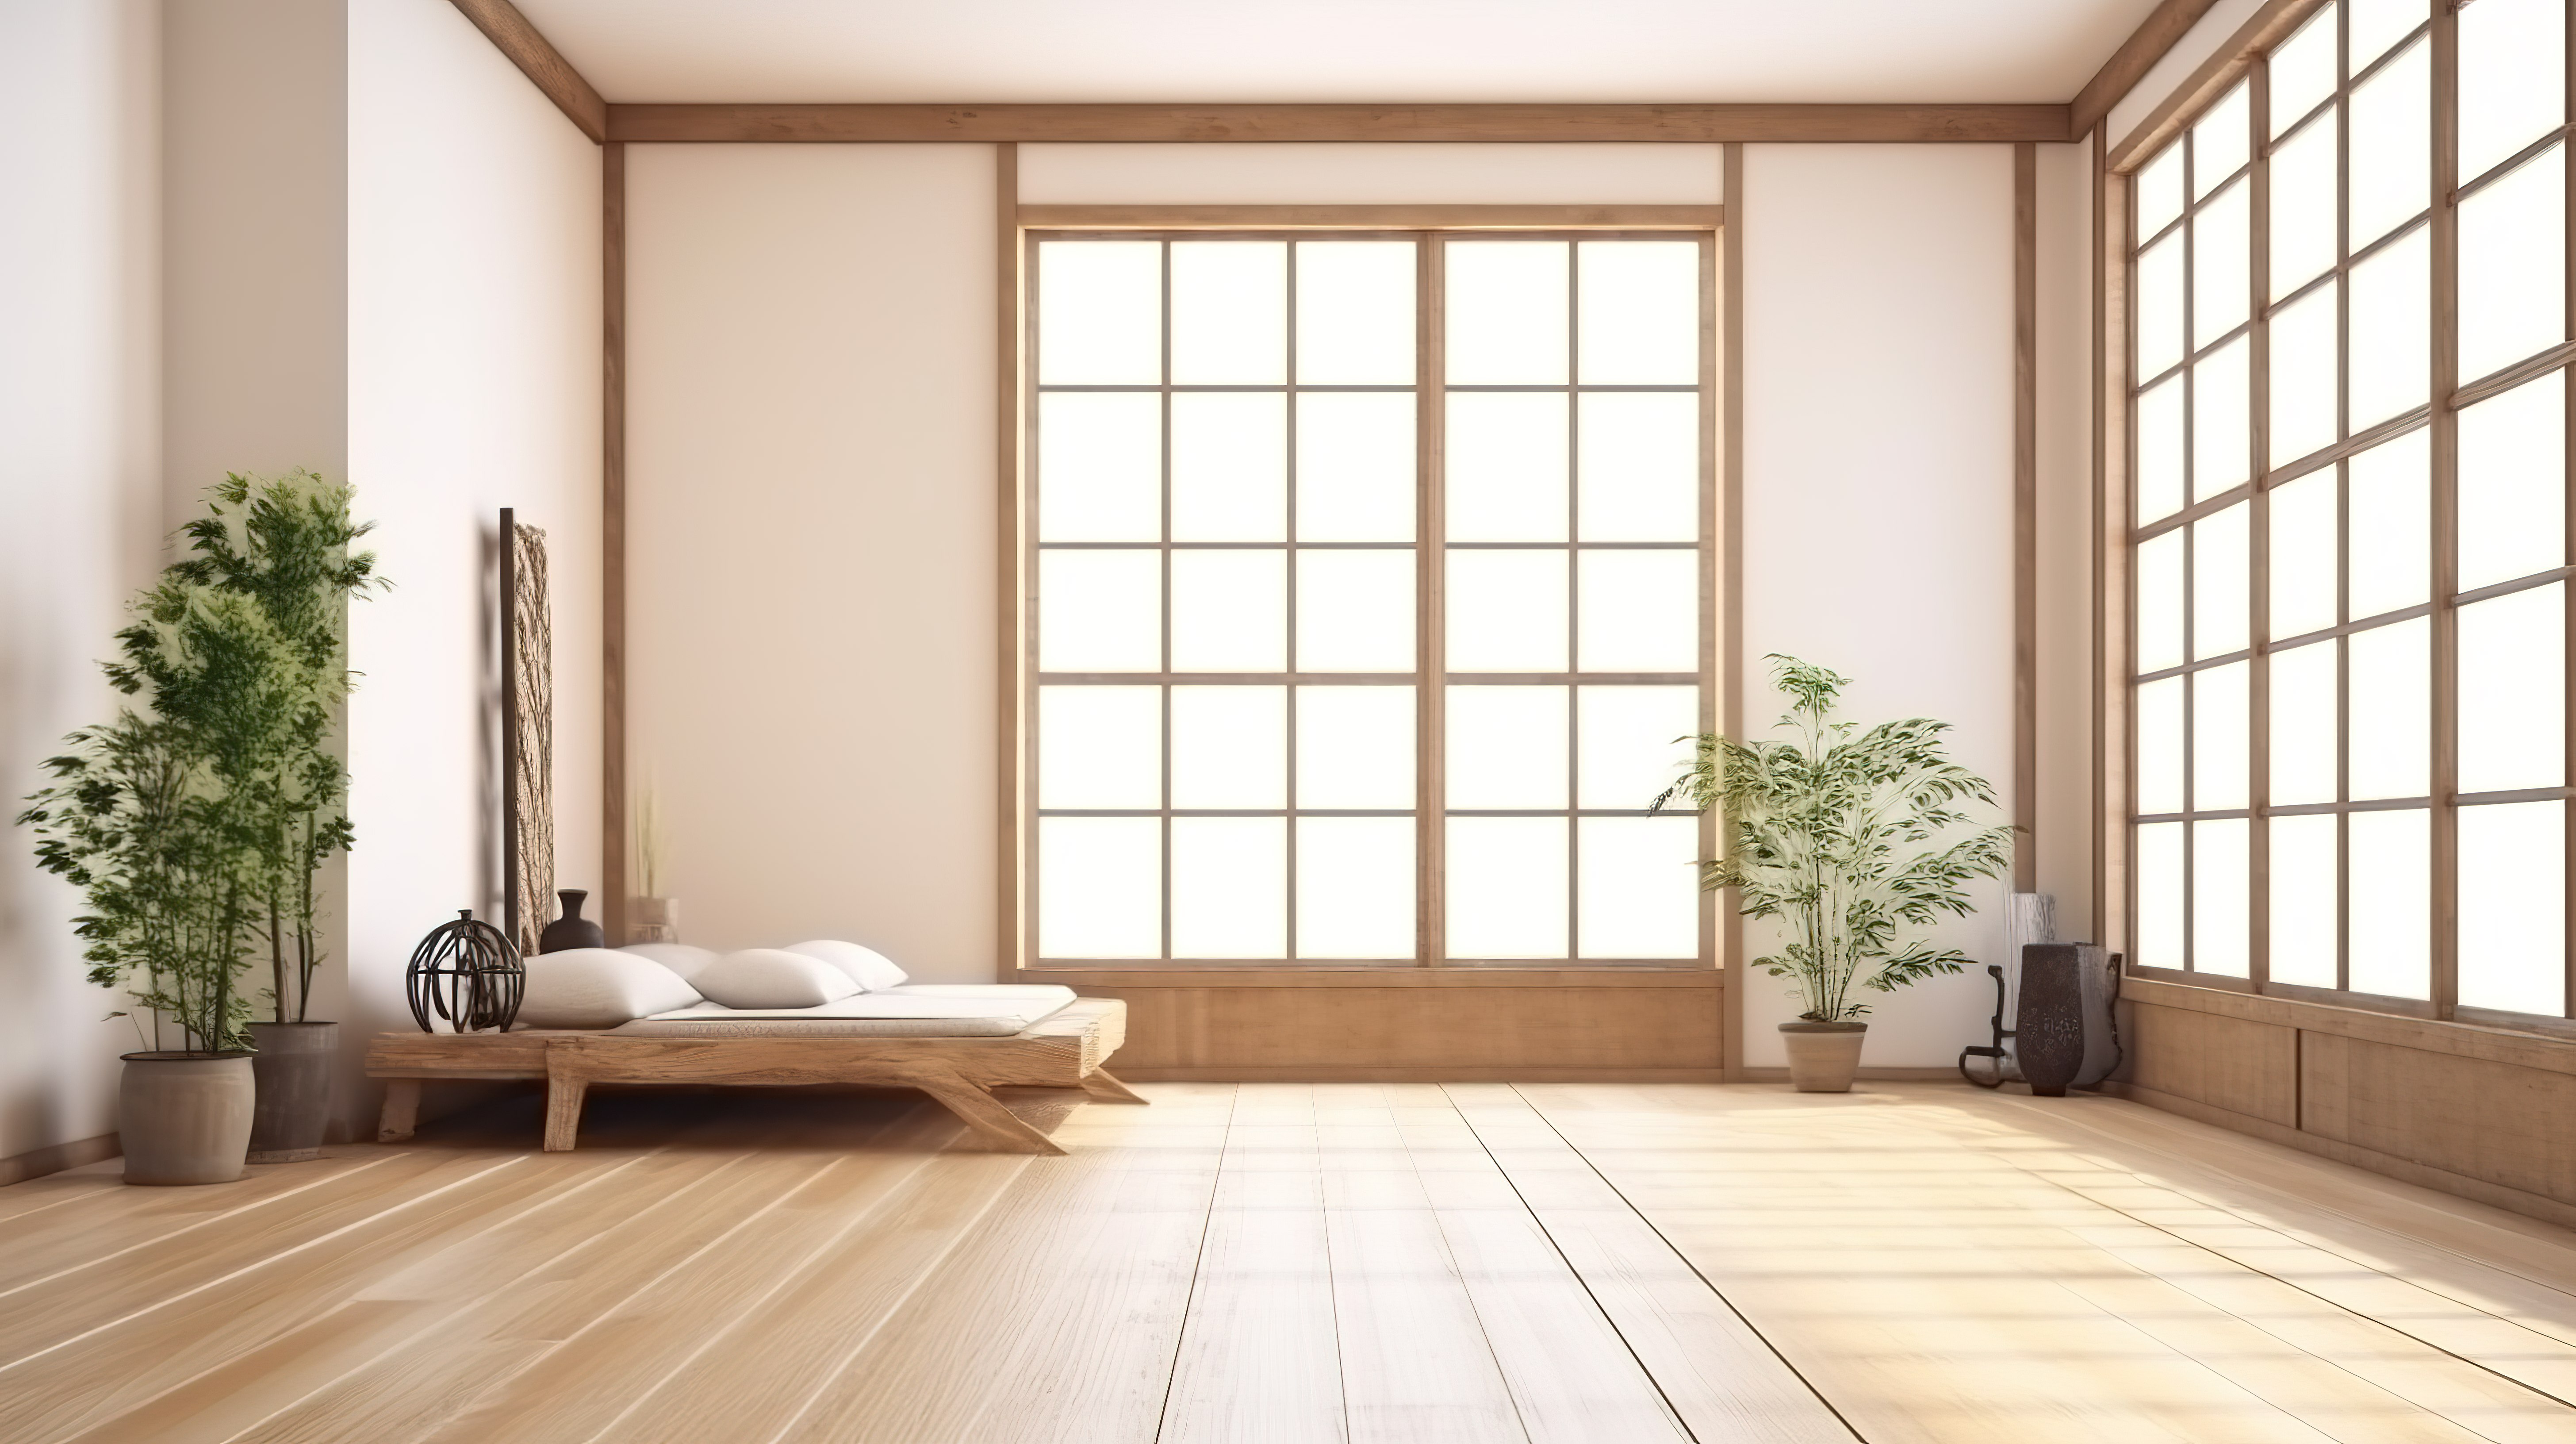 日式卧室室内 3D 渲染木地板与白墙背景图片